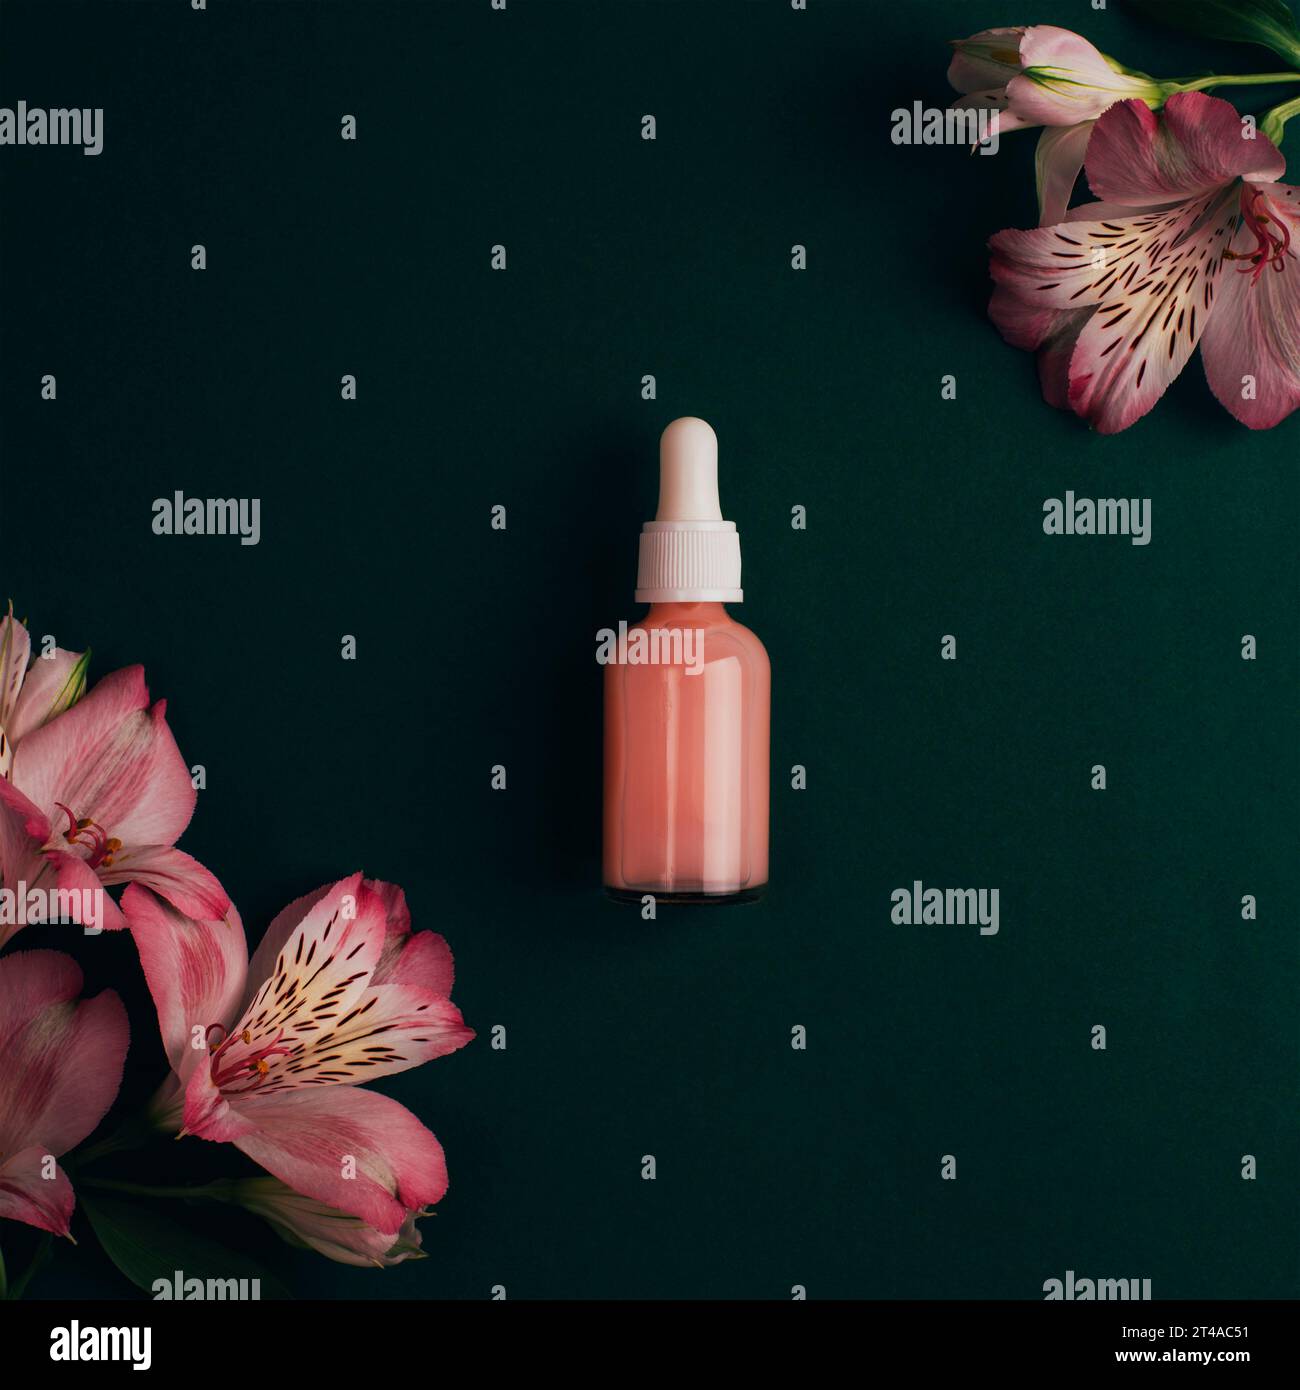 Kosmetikserumflasche und Alstroemeria-Rosa-Blüten auf dunkelgrünem Hintergrund. Draufsicht, flach liegend. Stockfoto